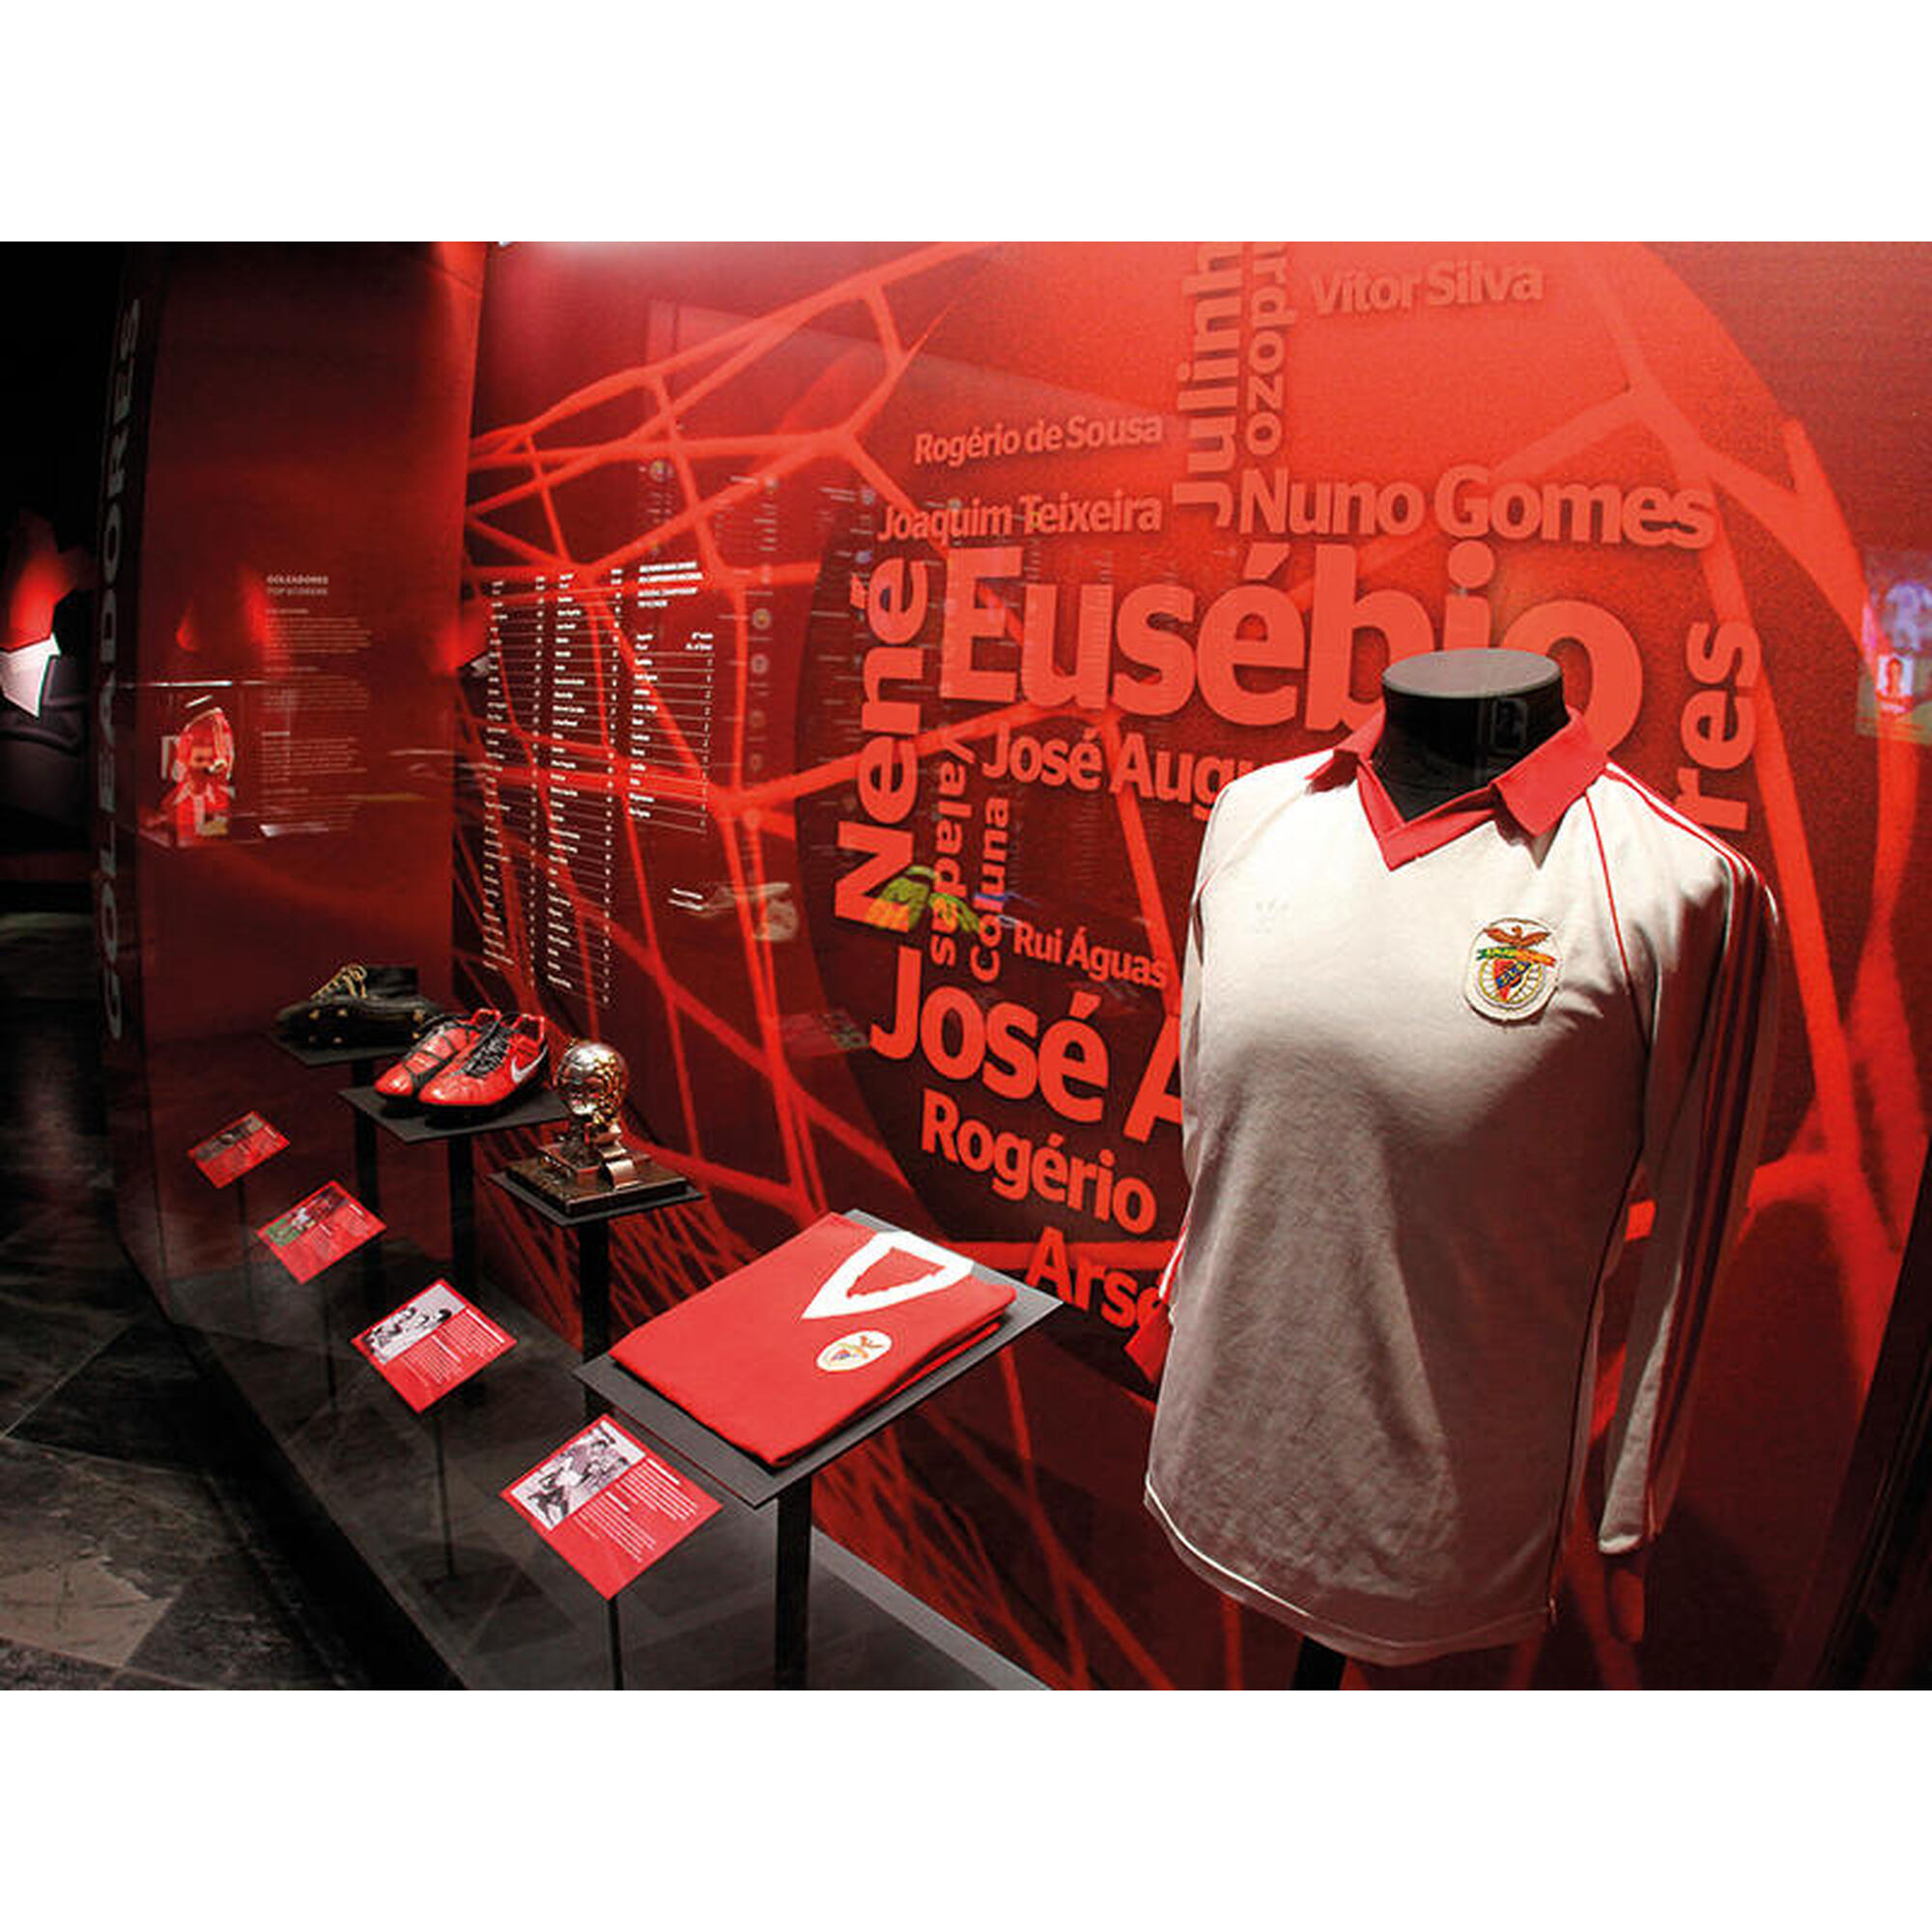 Pack Odisseias - SL Benfica | Visita Estádio e Museu + vale desconto jantar